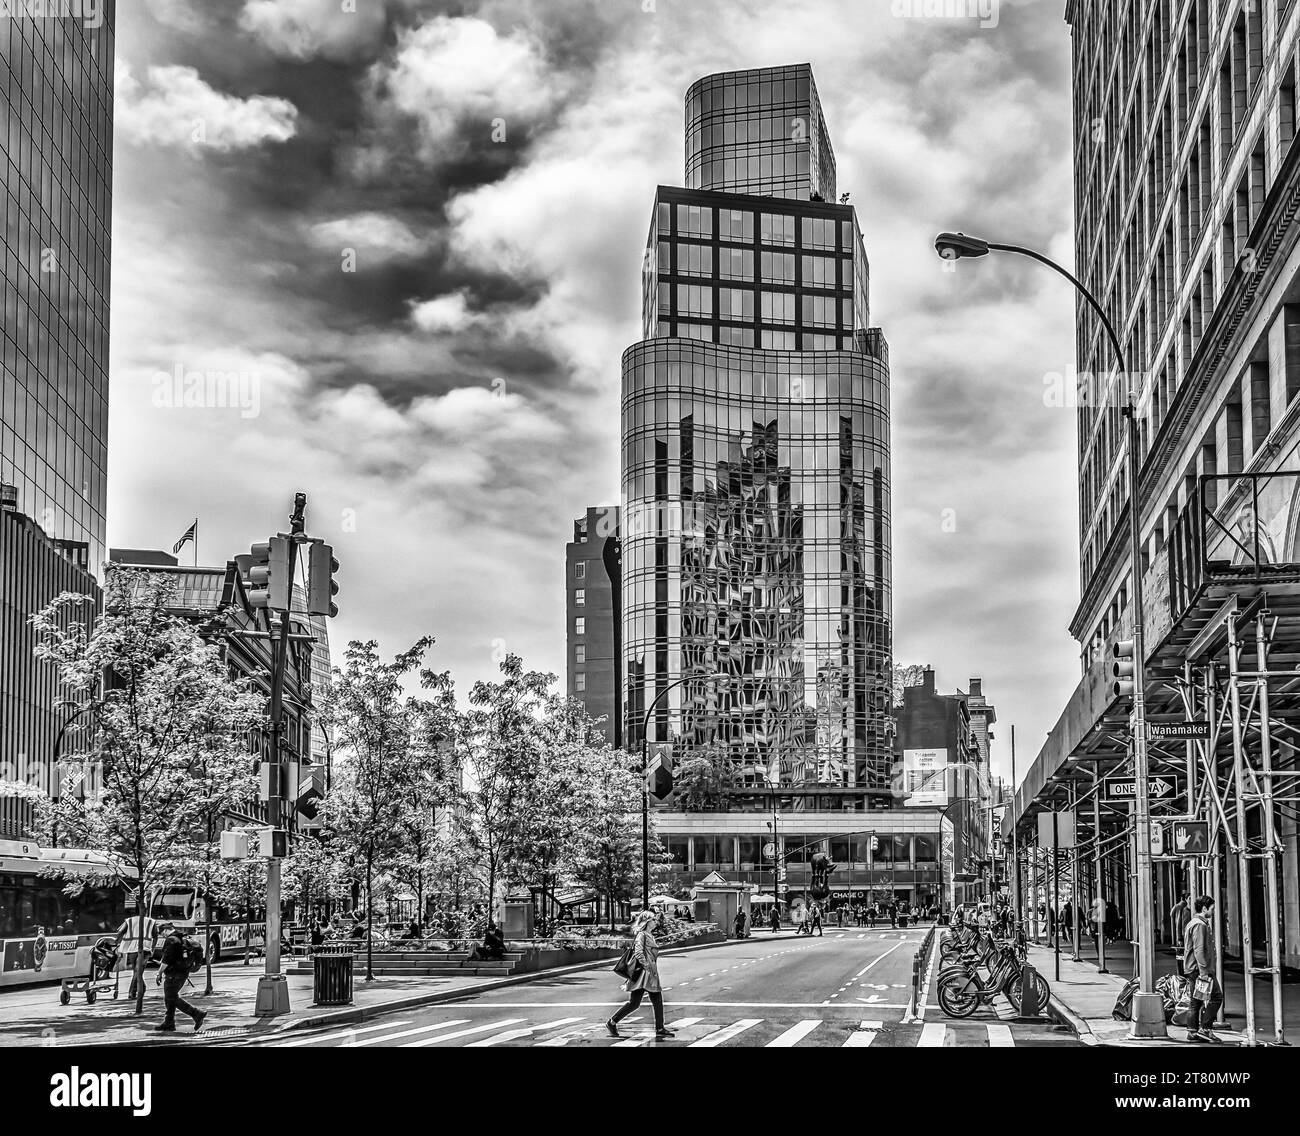 New York, USA, 14 mai 2018, scène urbaine à Astor place, Manhattan Banque D'Images